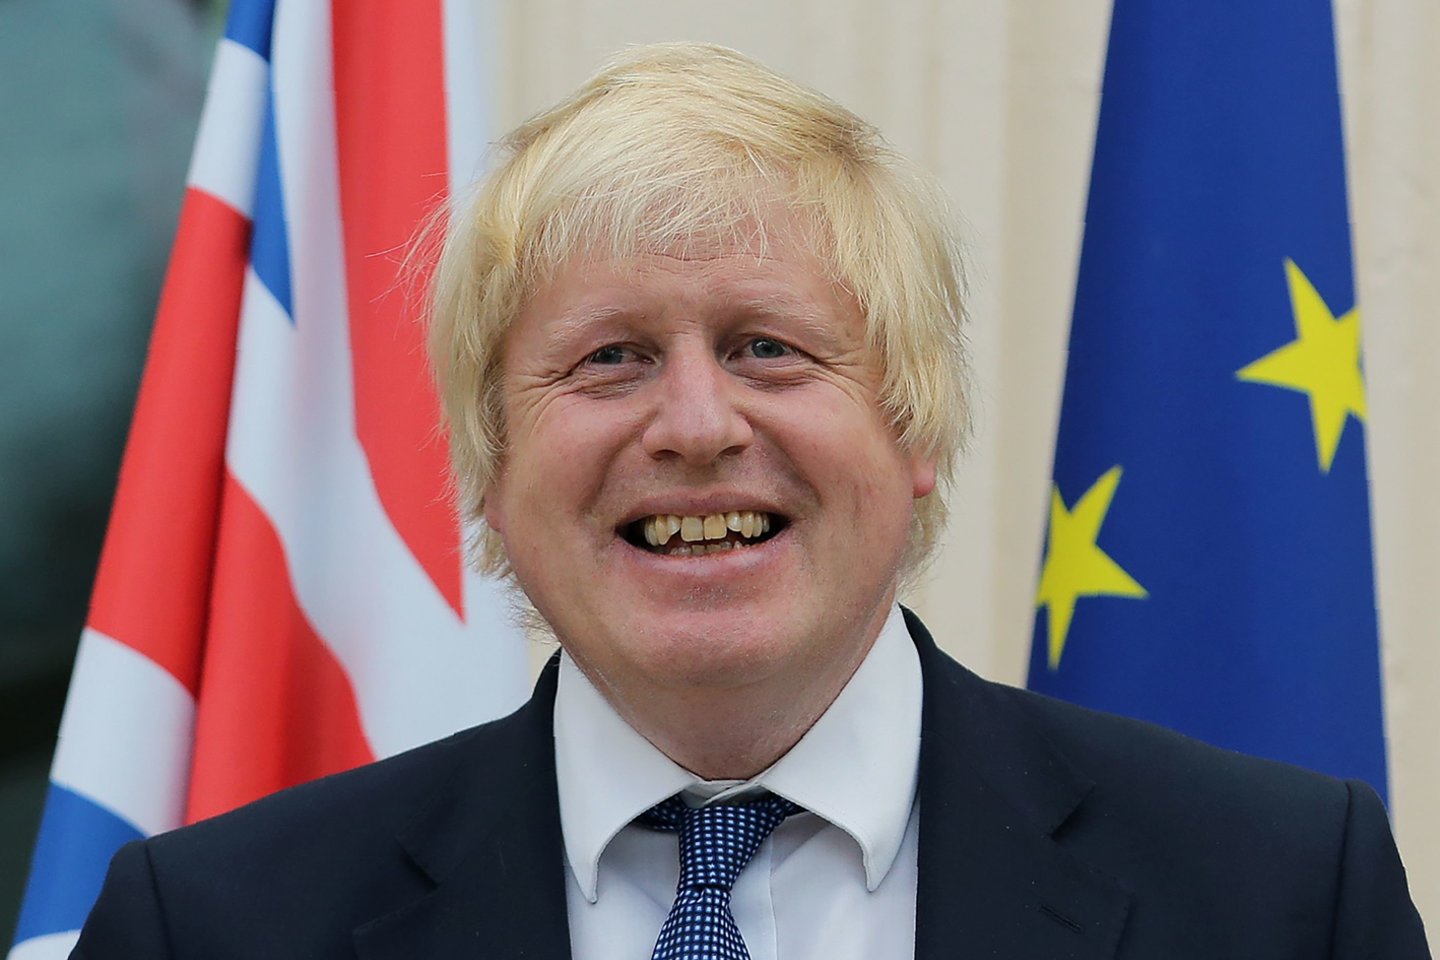  B.Johnsonas visuomet buvo ryški Britanijos politikos žvaigždė.<br> Reuters/Scanpix nuotr.